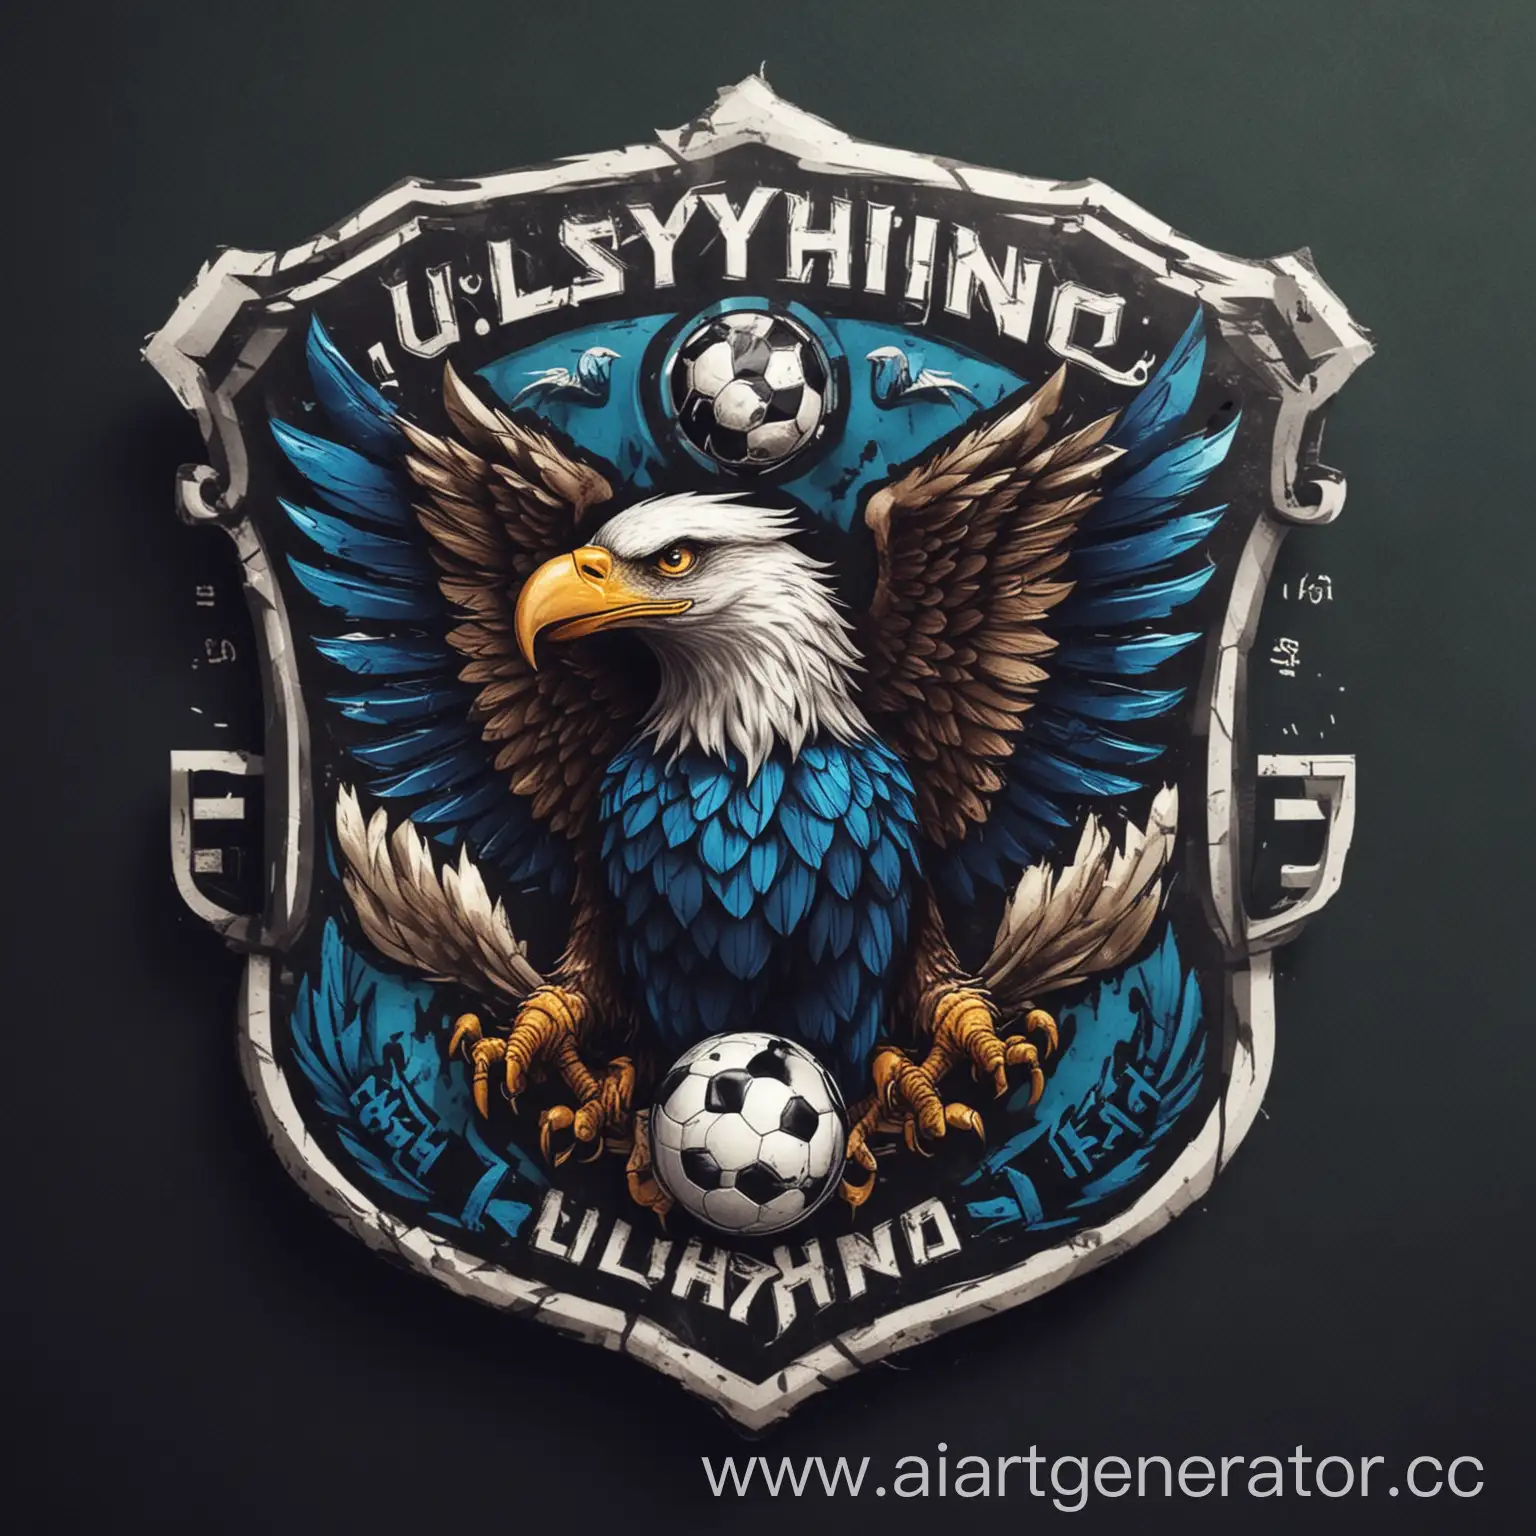 Ulyashino-Football-Team-Logo-with-Majestic-Eagle